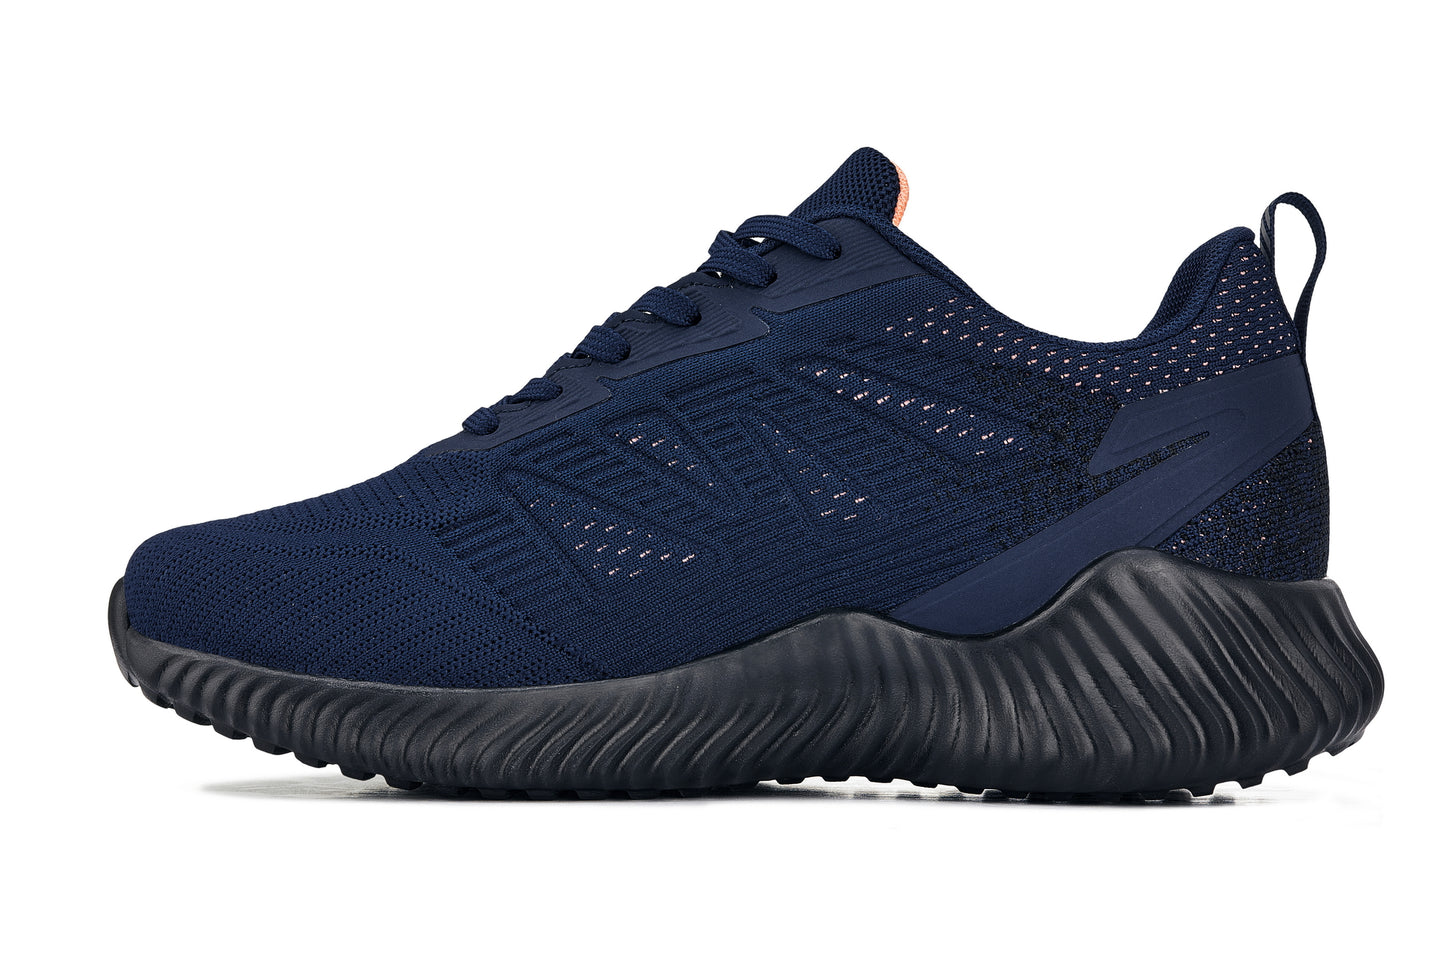 CALTO - Q222 - 2.6 pulgadas más alto (azul marino/coral) - Zapatillas deportivas ligeras